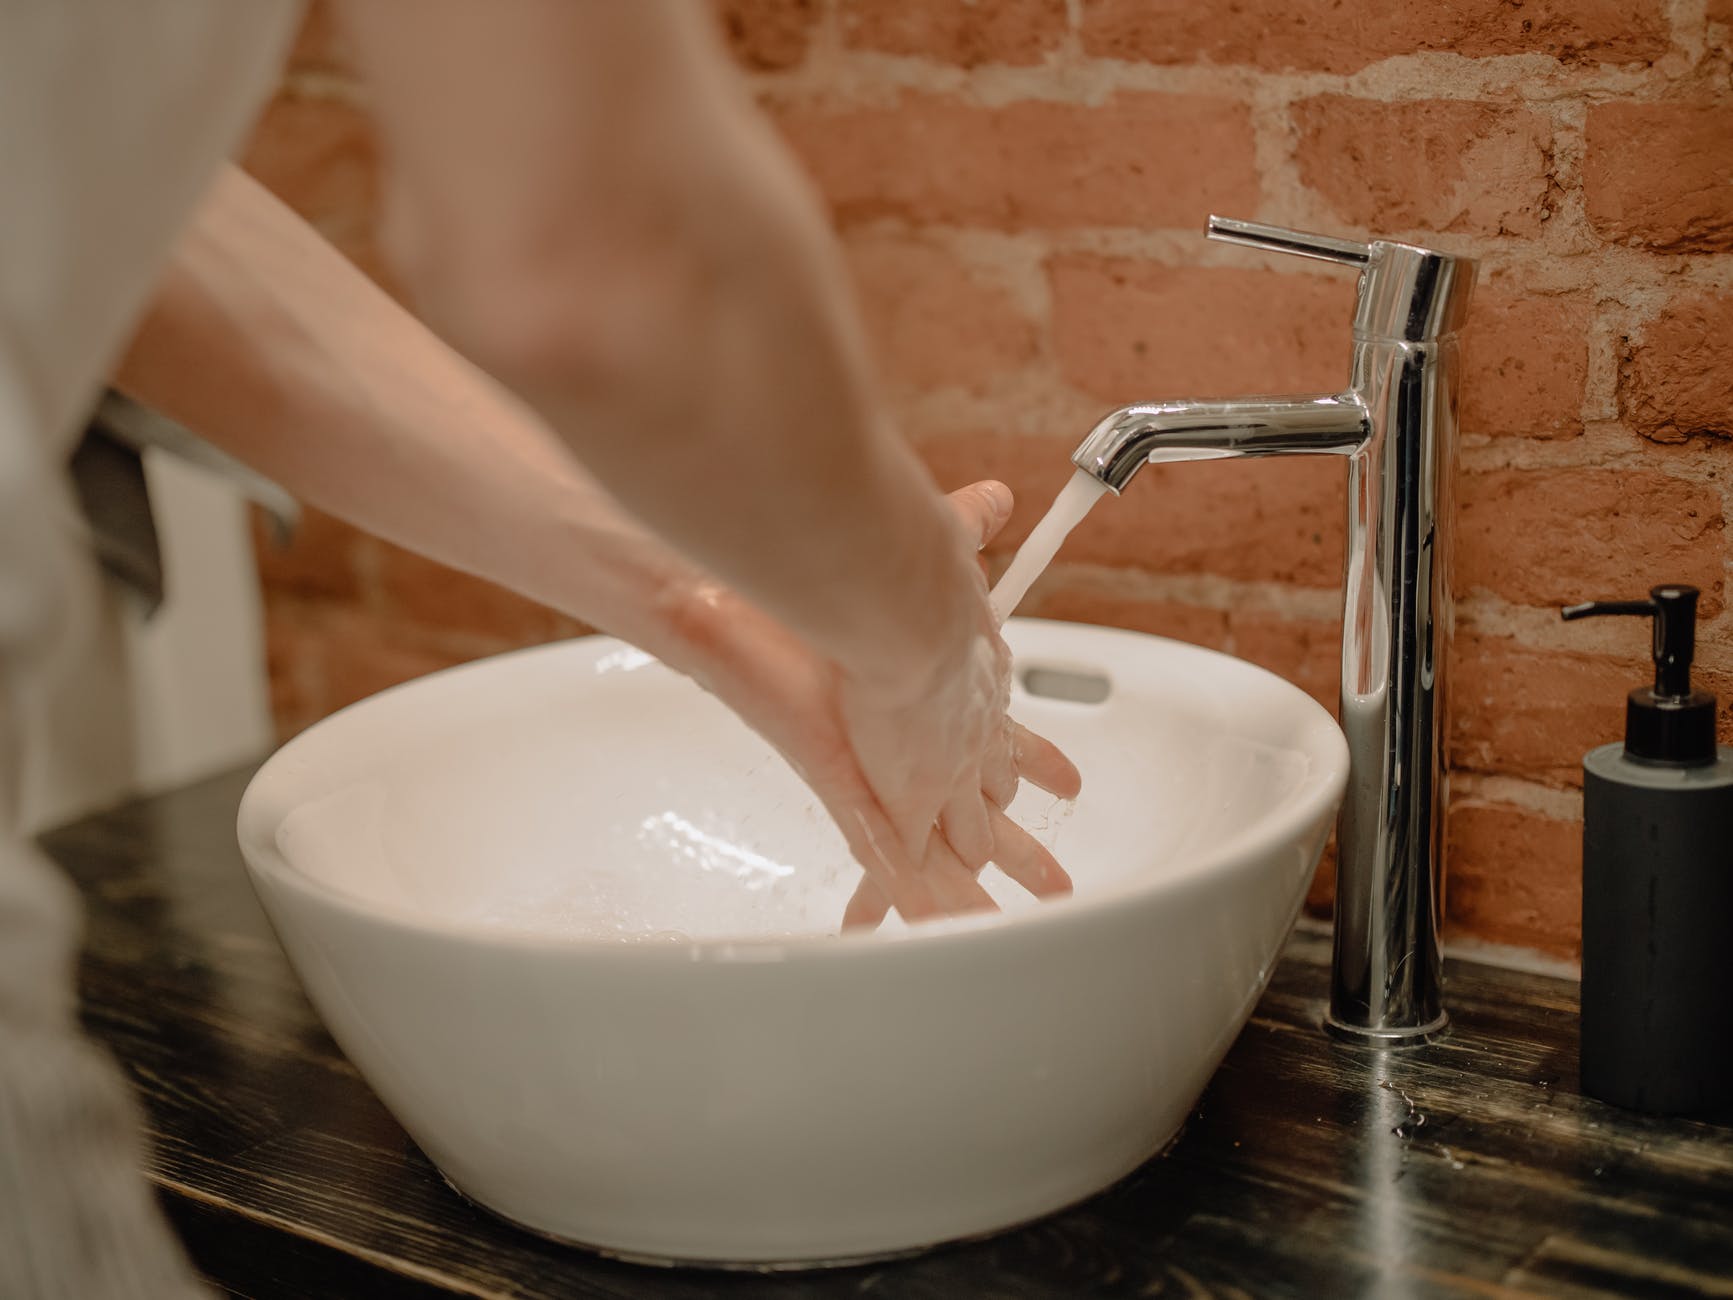 Lavado de manos evita hasta un 80% de infecciones: Ecolab